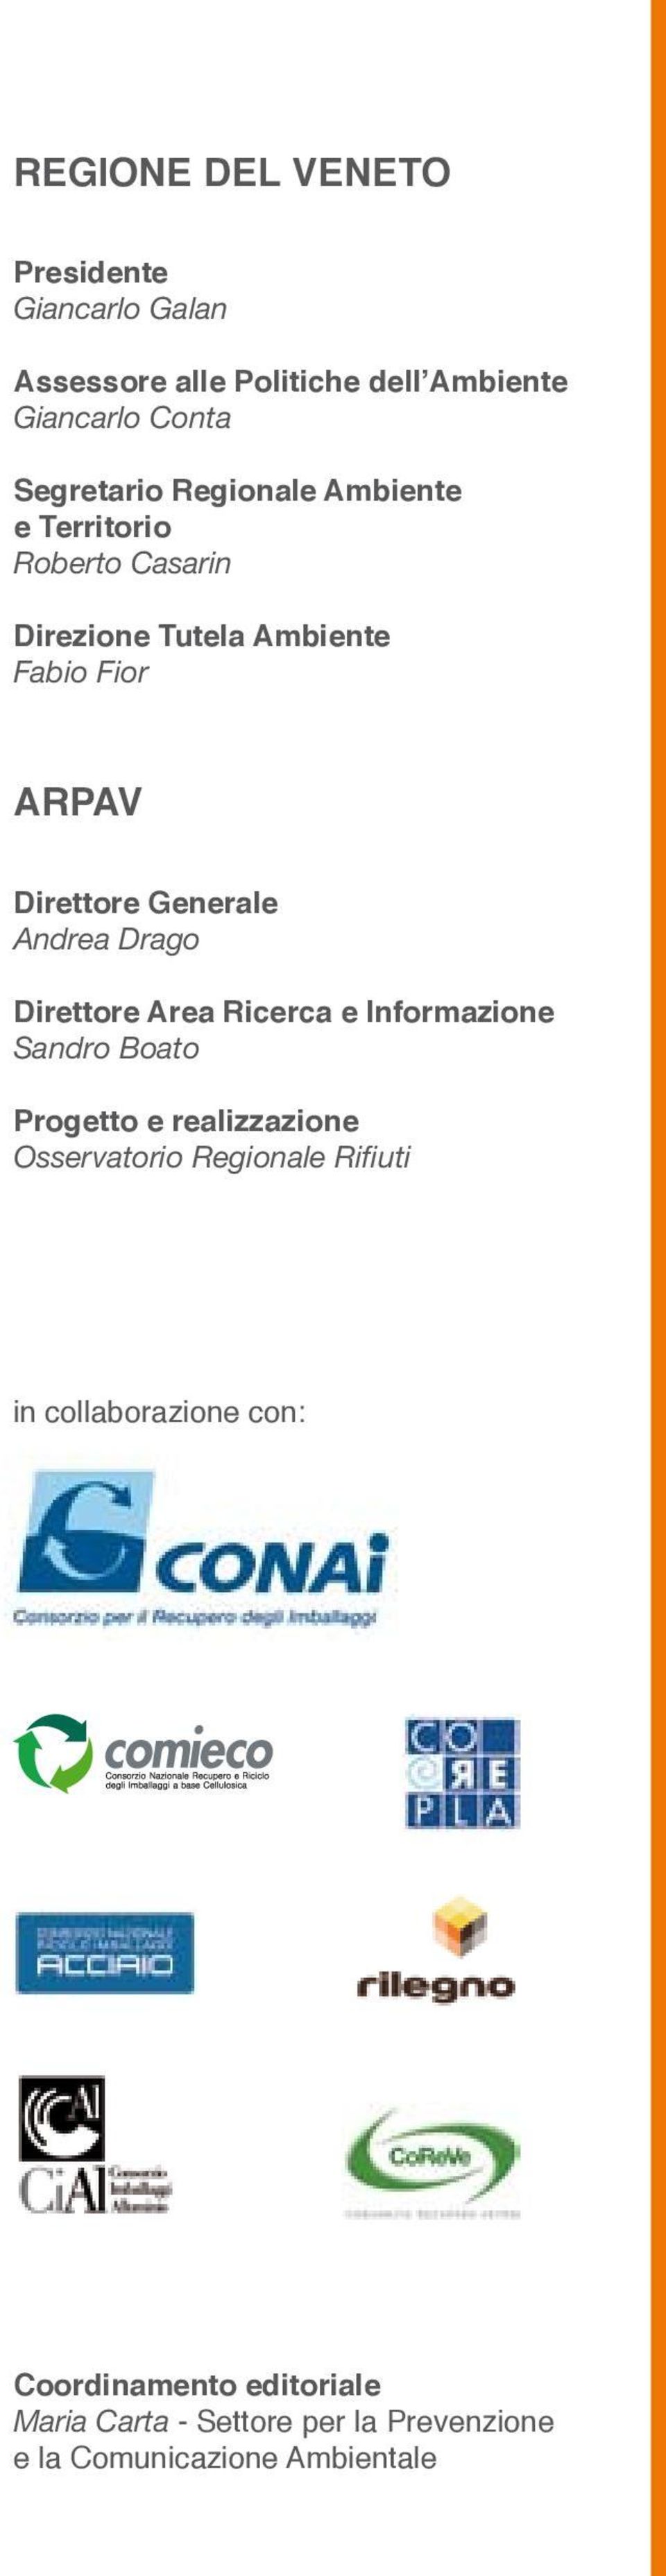 Andrea Drago Direttore Area Ricerca e Informazione Sandro Boato Progetto e realizzazione Osservatorio Regionale